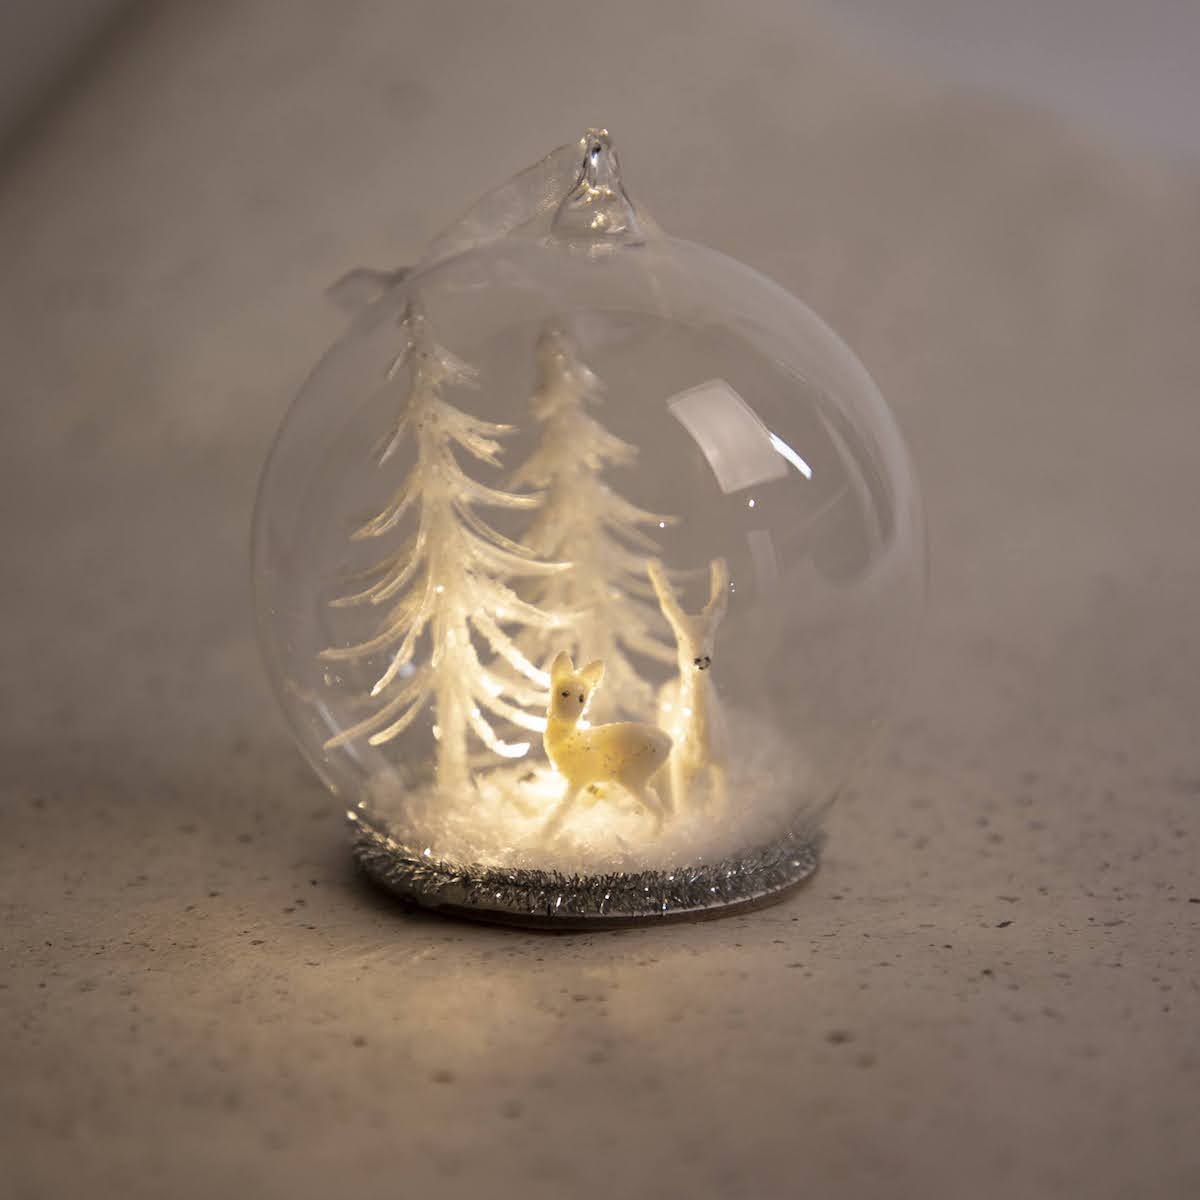 LED Glass Ball Snowglobe Ornament with LED Light - P I C N I C 